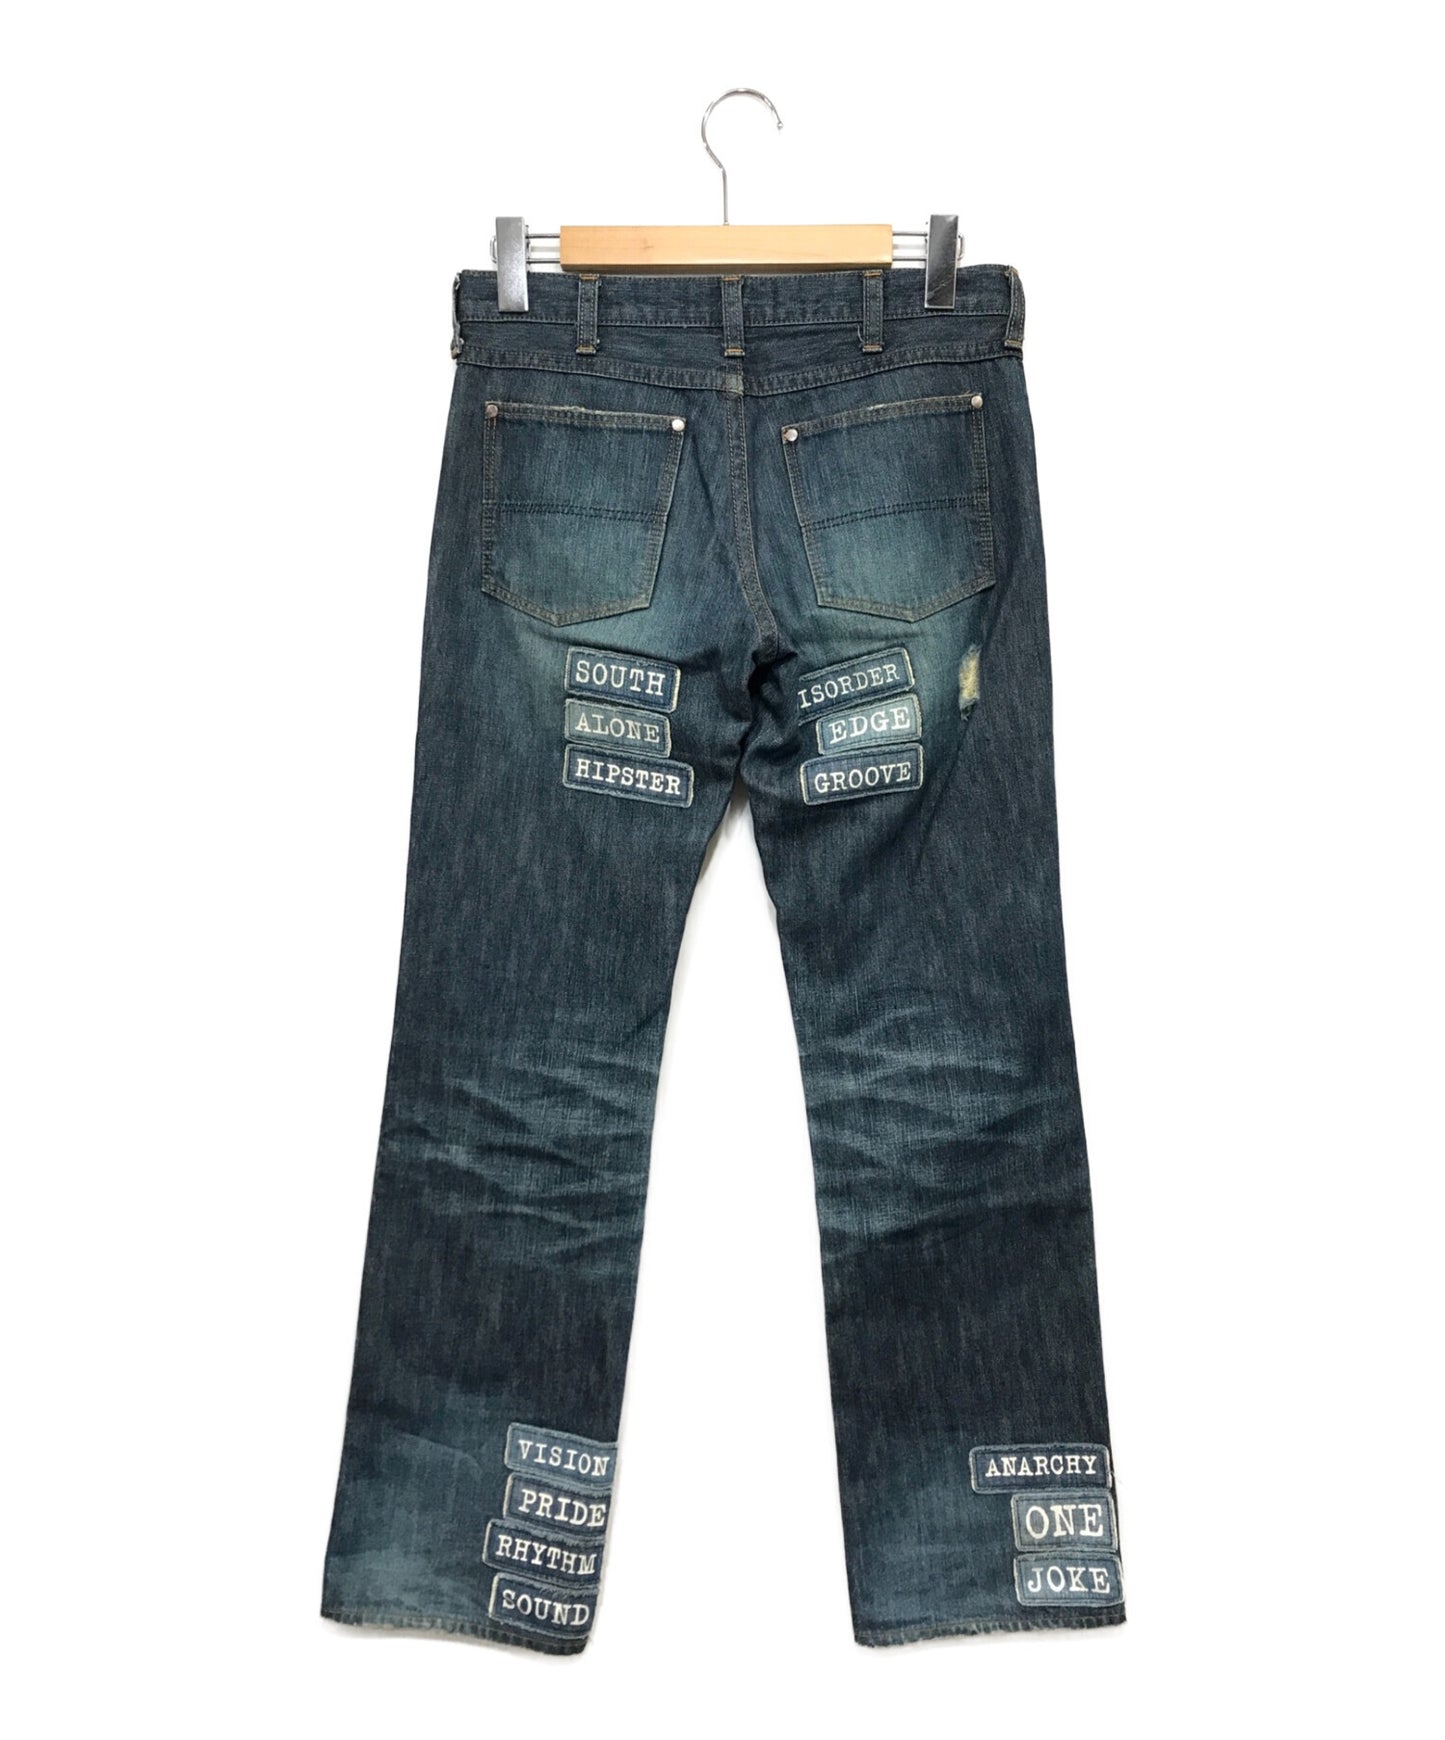 ウエスト78cm04aw number (n)ine Patchwork Black Jeans - パンツ